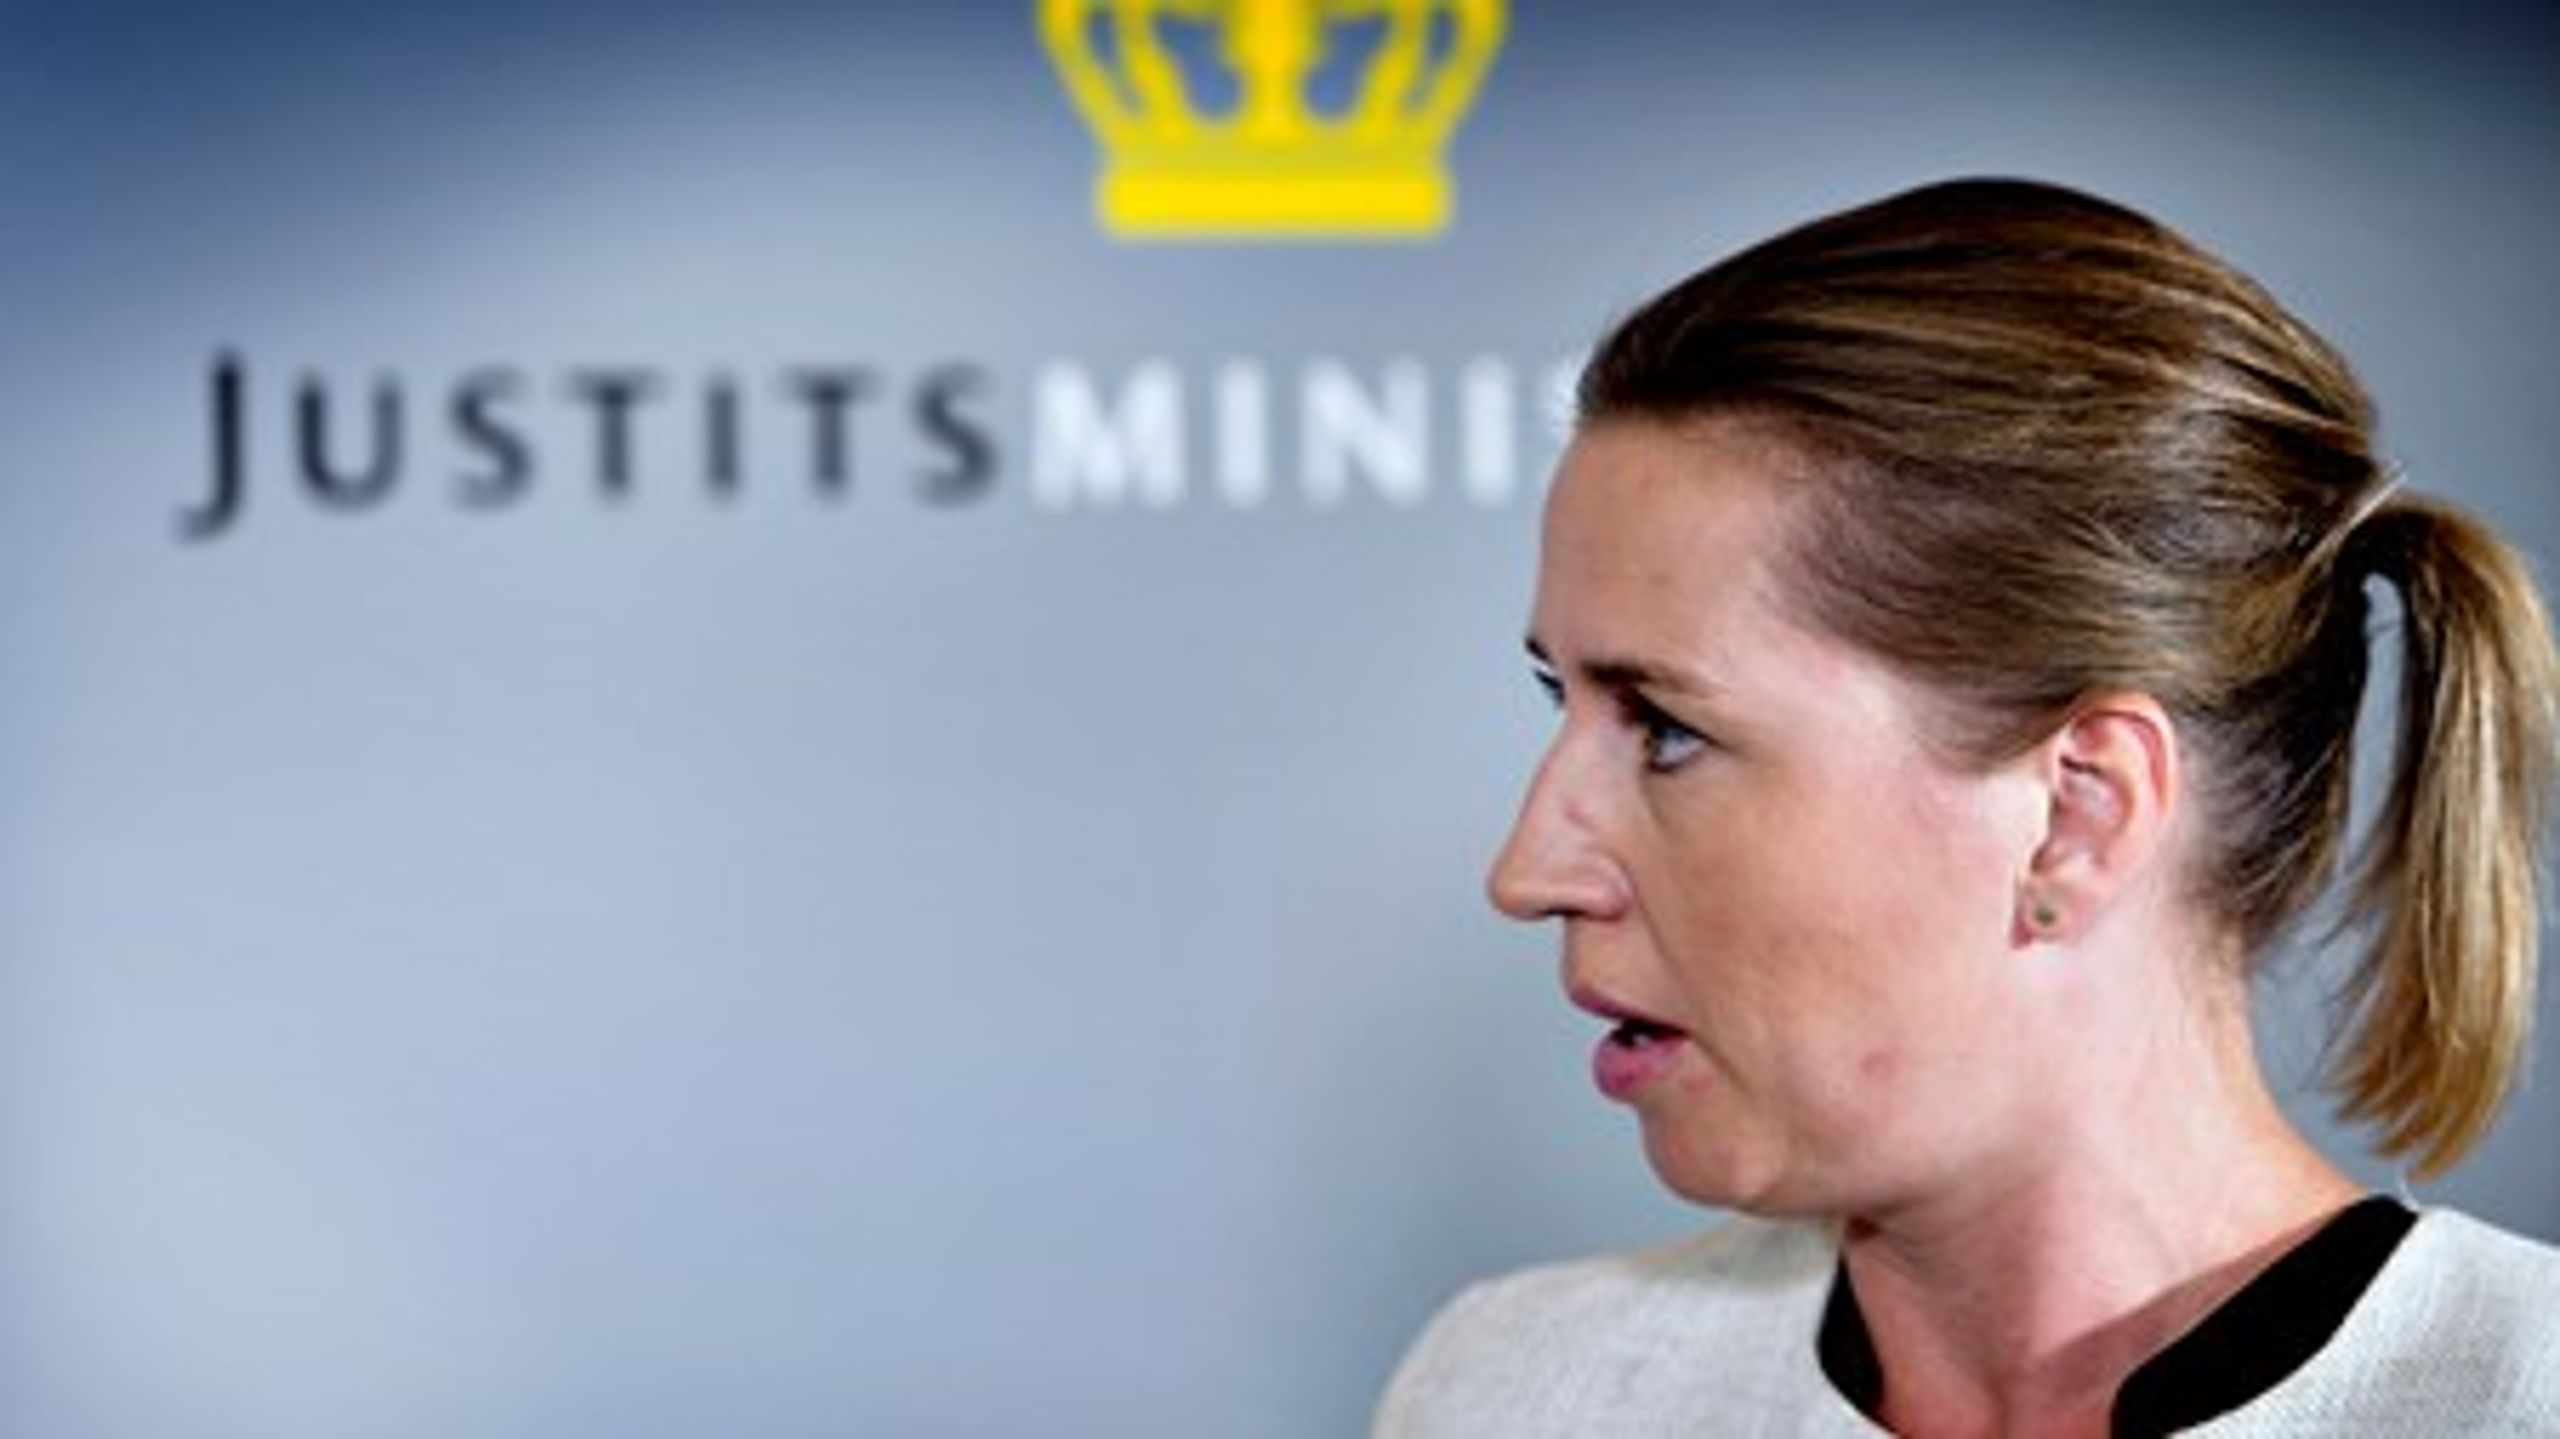 Justitsminister Mette Frederiksen (S) er klar til at imødekomme blå bloks krav om mere åbenhed om Danmarks implementering af EU-regler.